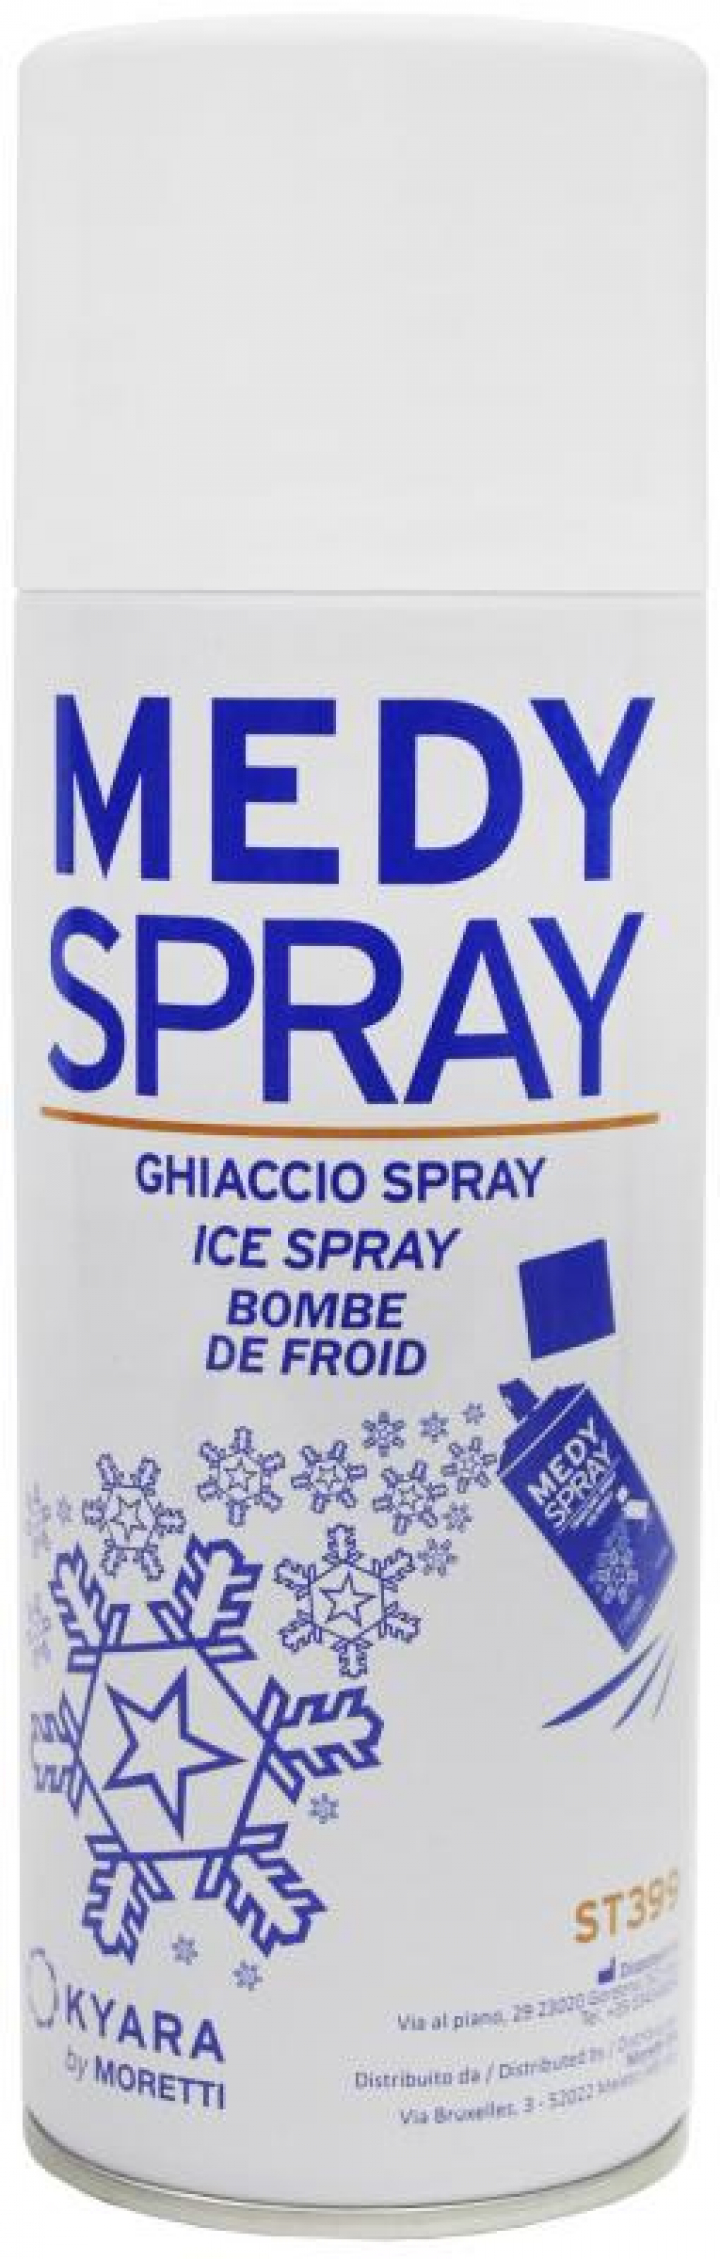 Spray de frio sintéctico analgésico (spray milagroso) Glace Spray 400ml